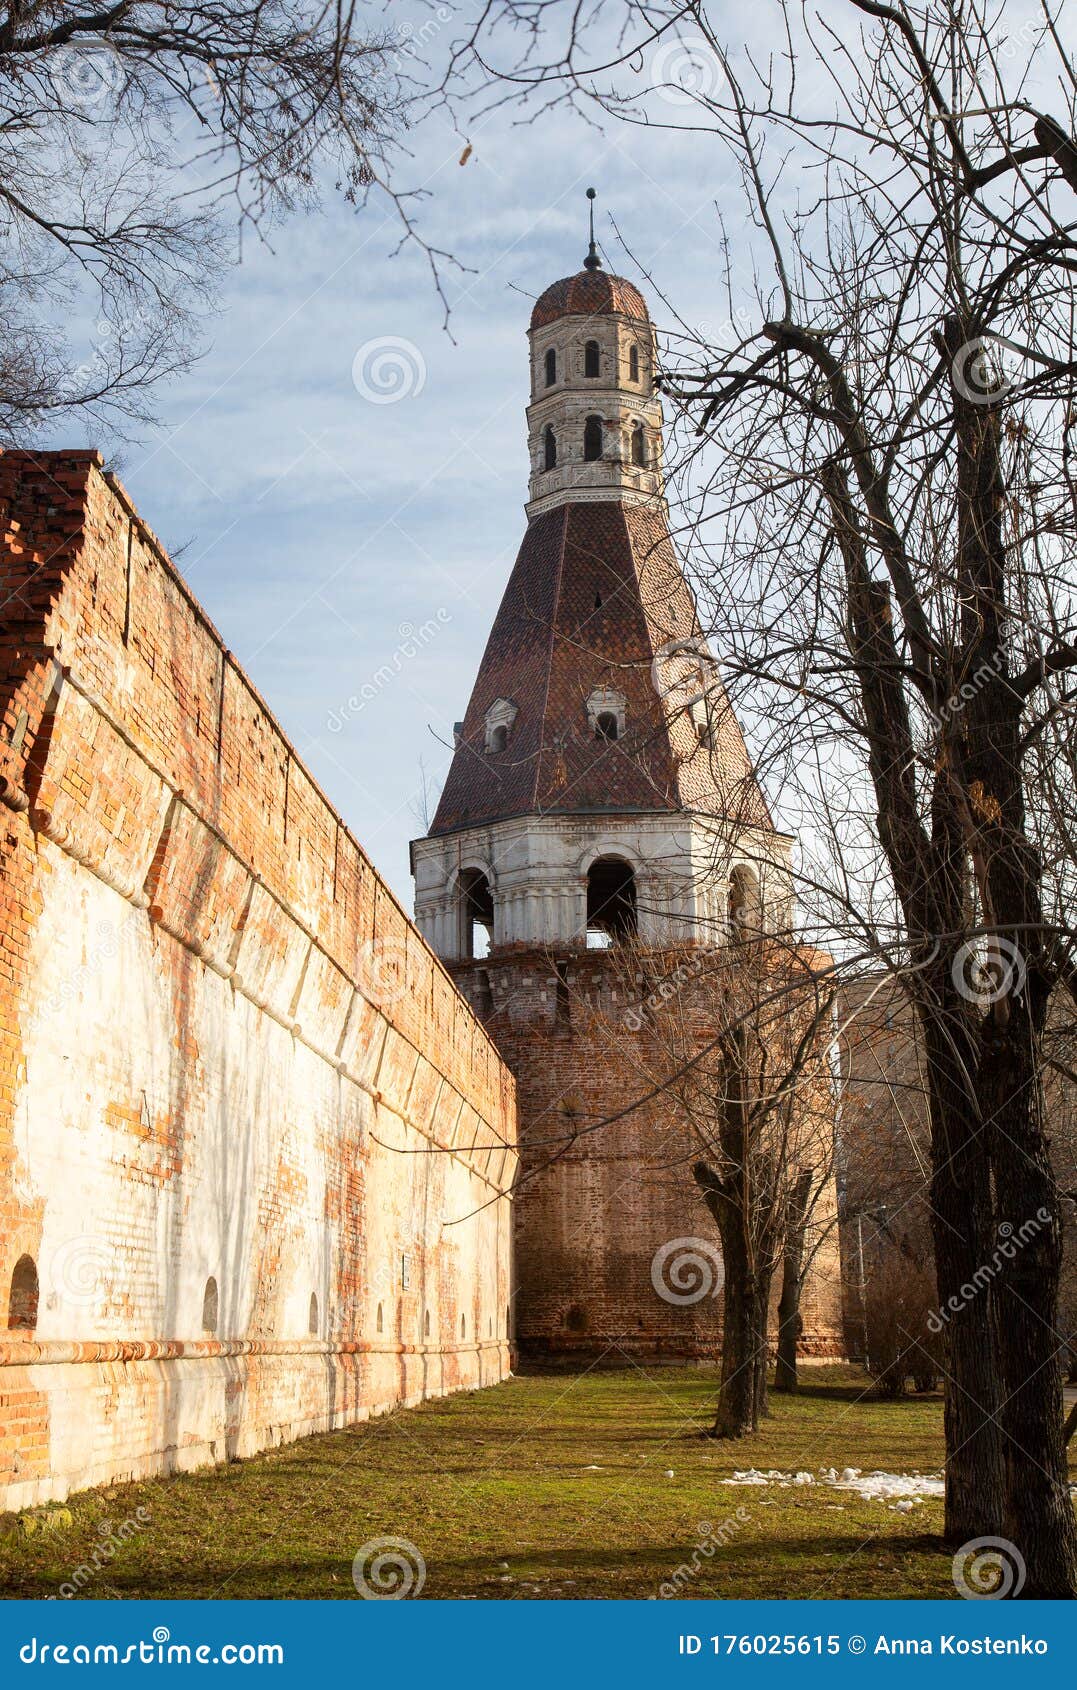 a walk along the simonov monastery in moscow